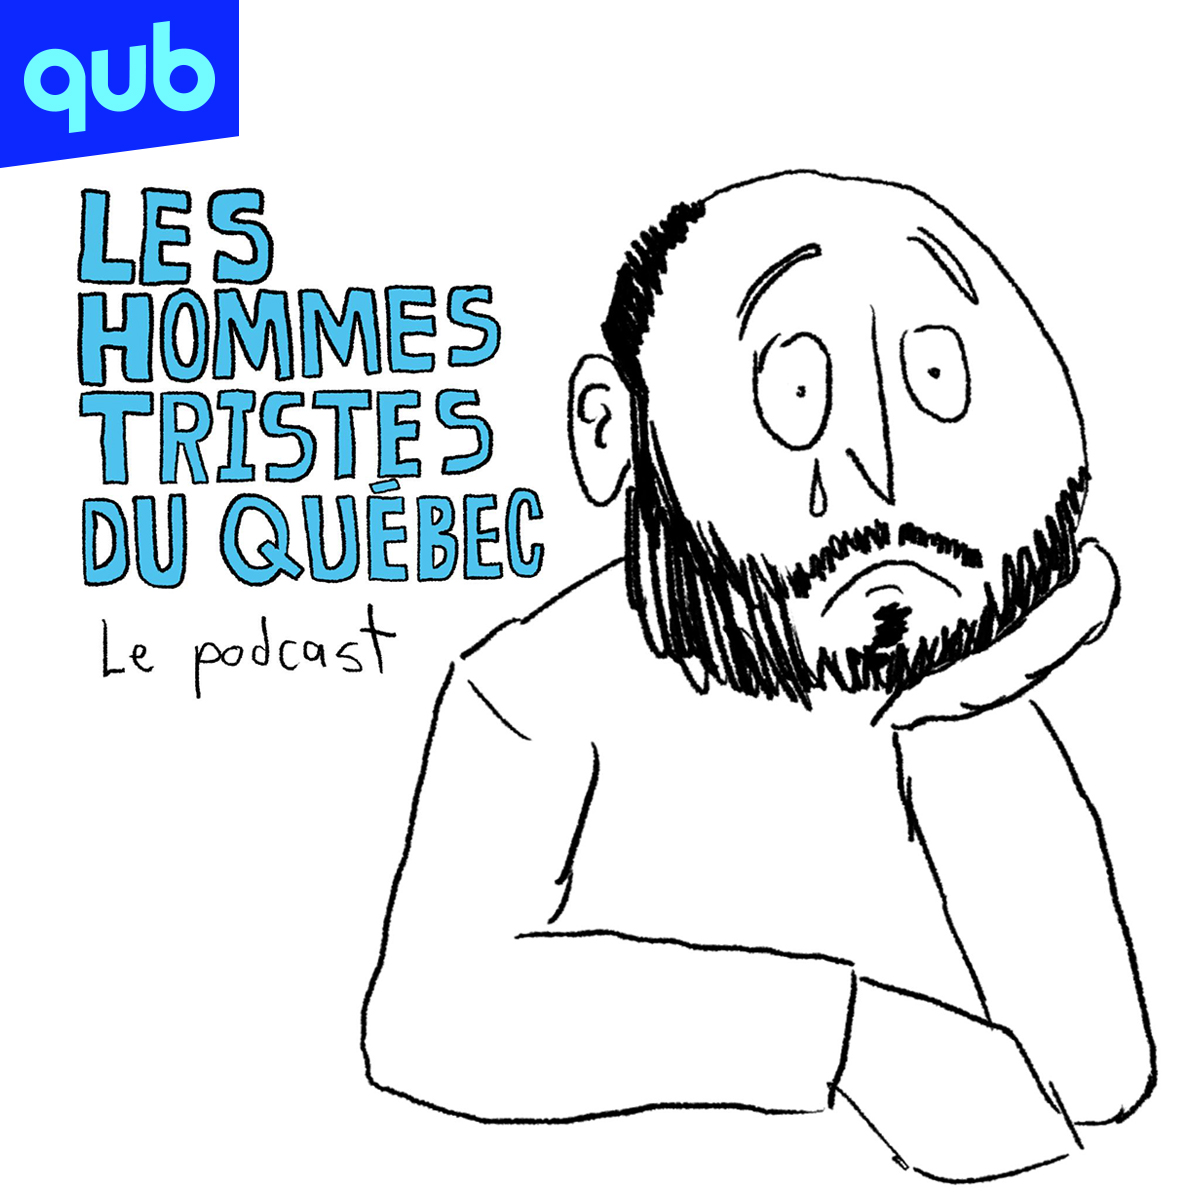 Les hommes tristes du Québec: Le podcast